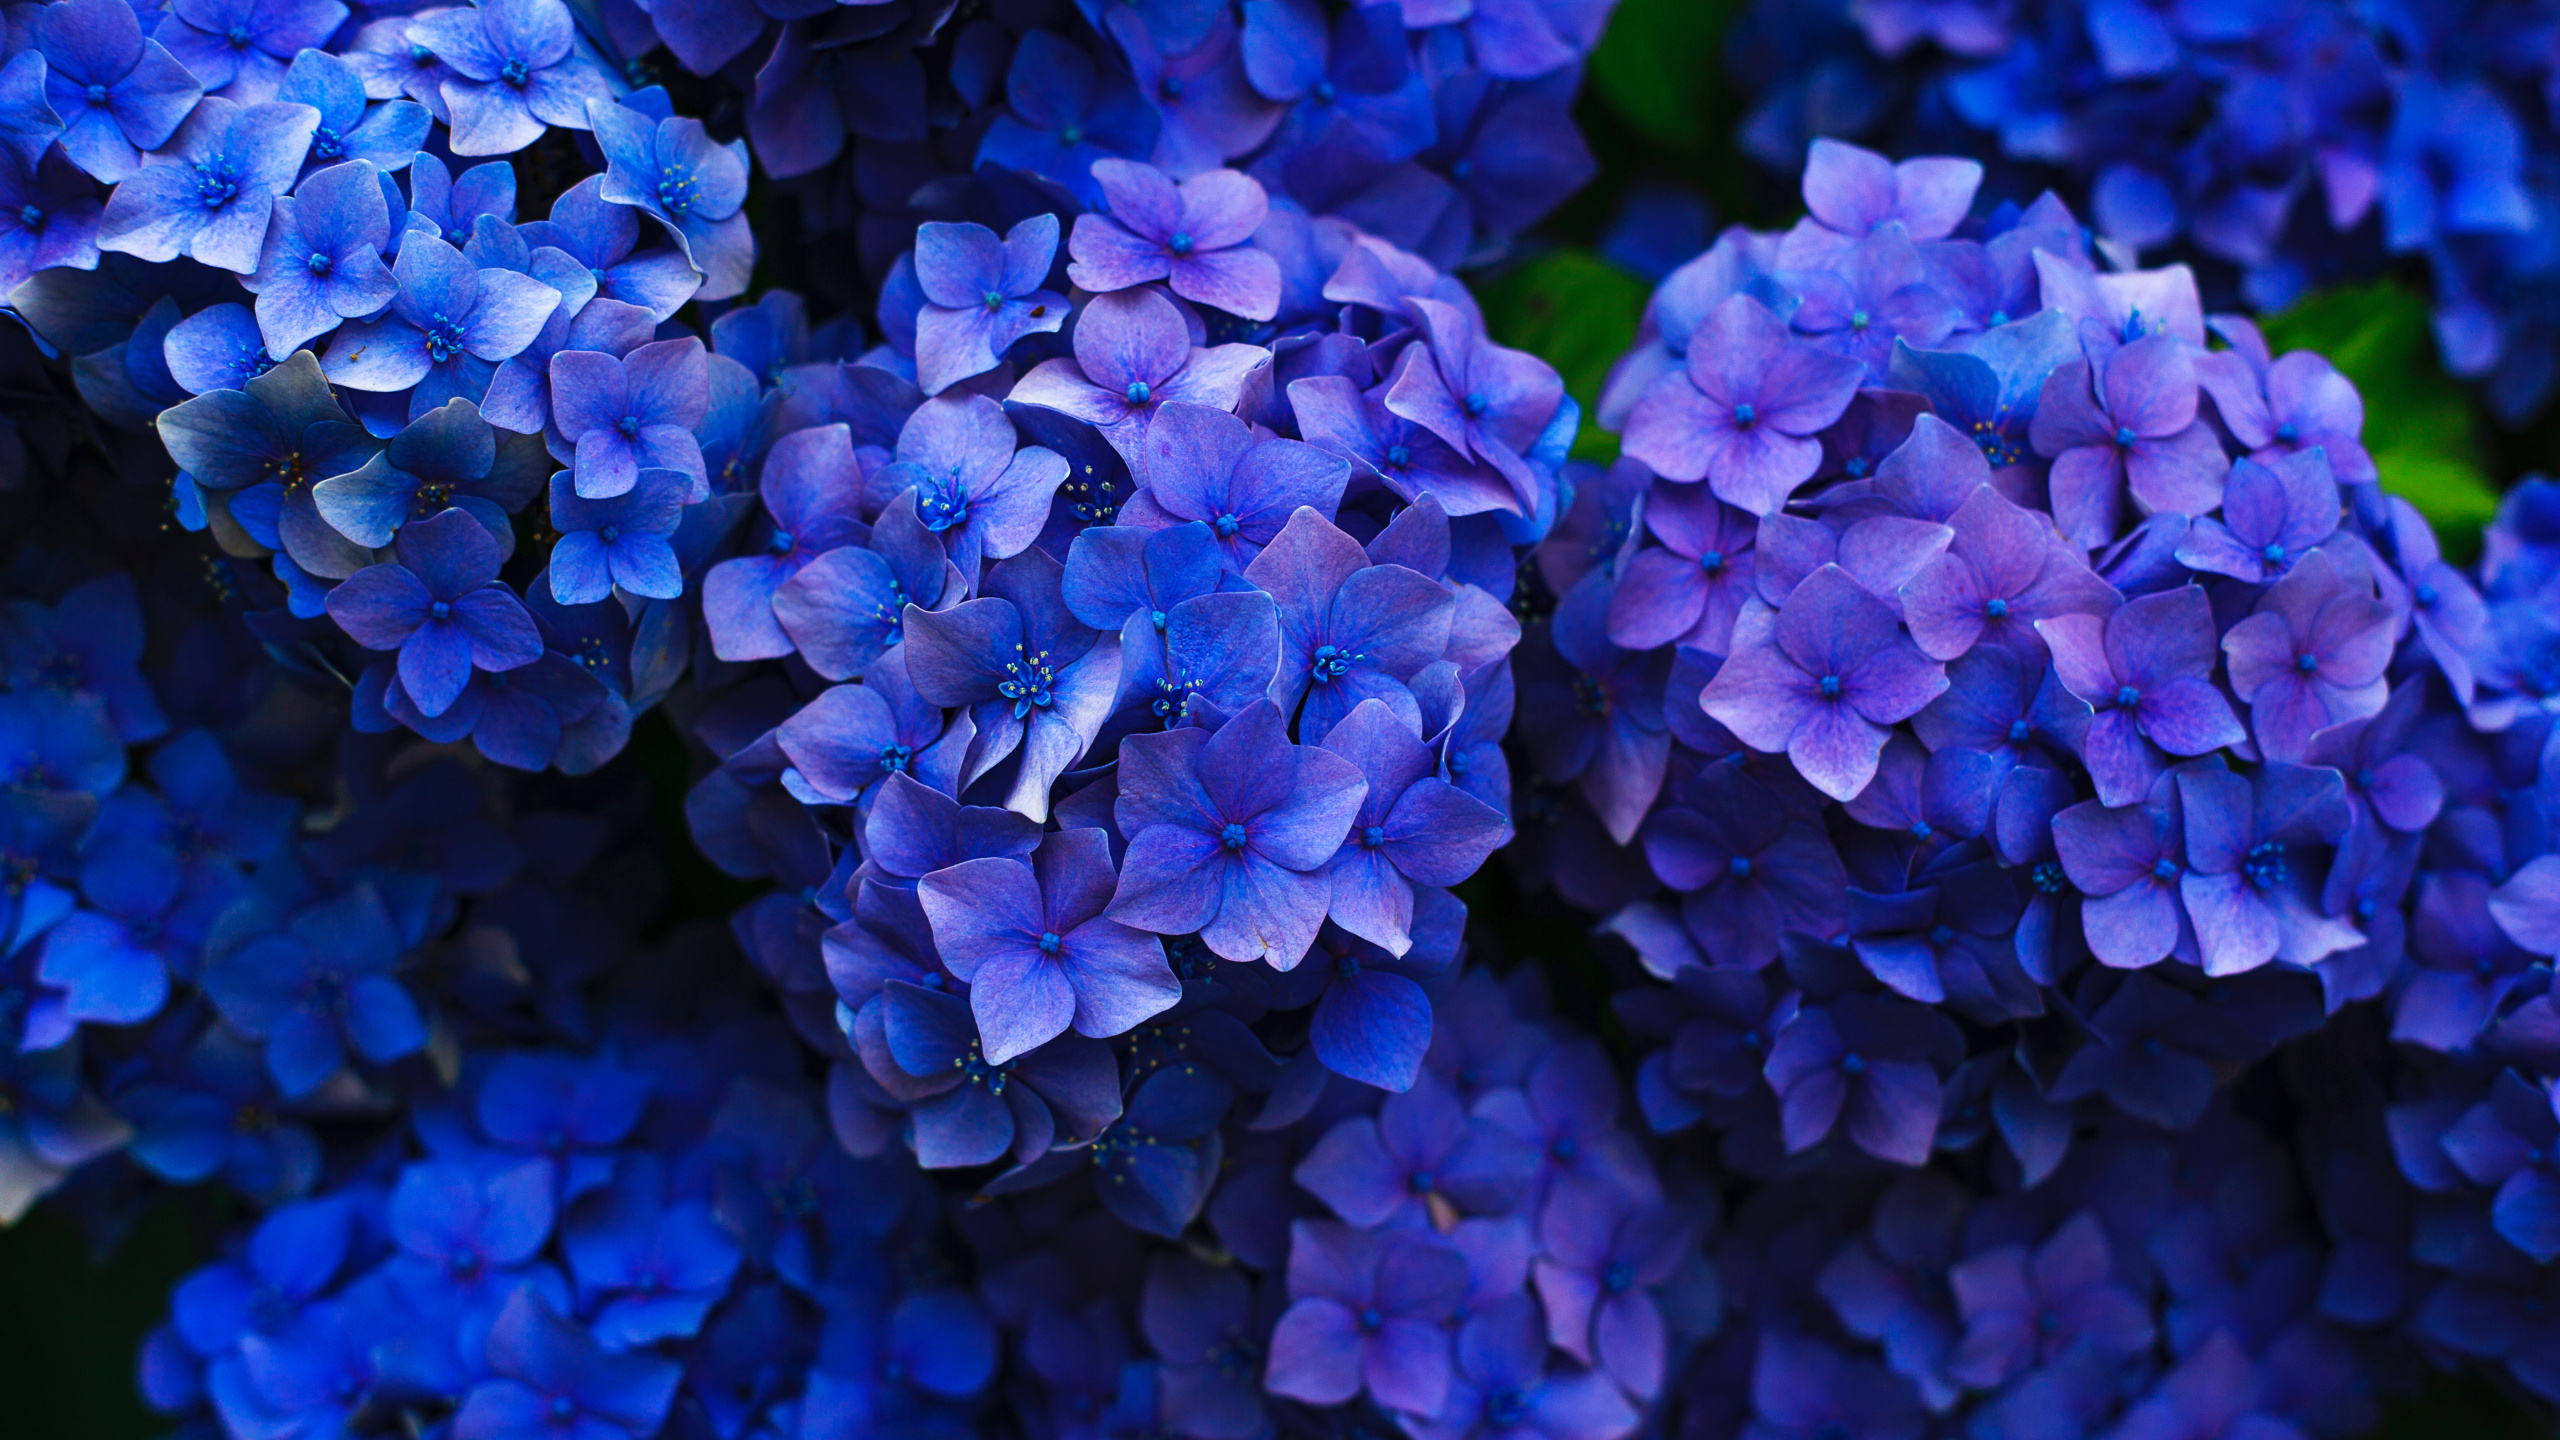 法国的绣球花, 灌木, 钴蓝色的, 紫色的, 紫罗兰色 壁纸 2560x1440 允许